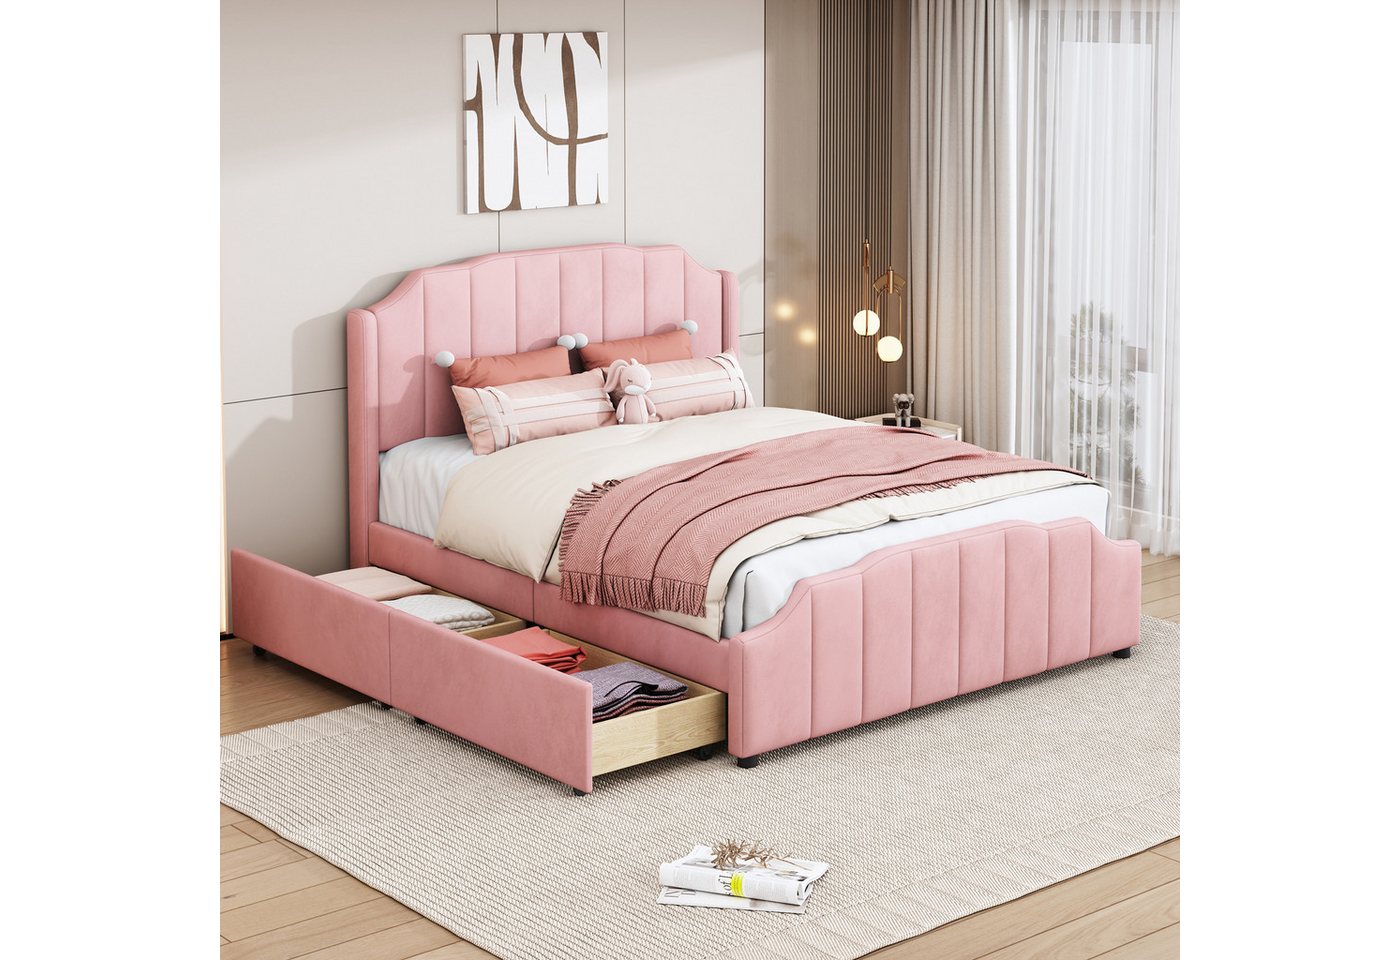 IDEASY Polsterbett Mit Samt gepolstertes Plattformbett, 2 ausziehbare Schubladen, beige/rosa/grau, 140 x 200 cm,hochwertige Holzlatten, geräuschlos von IDEASY